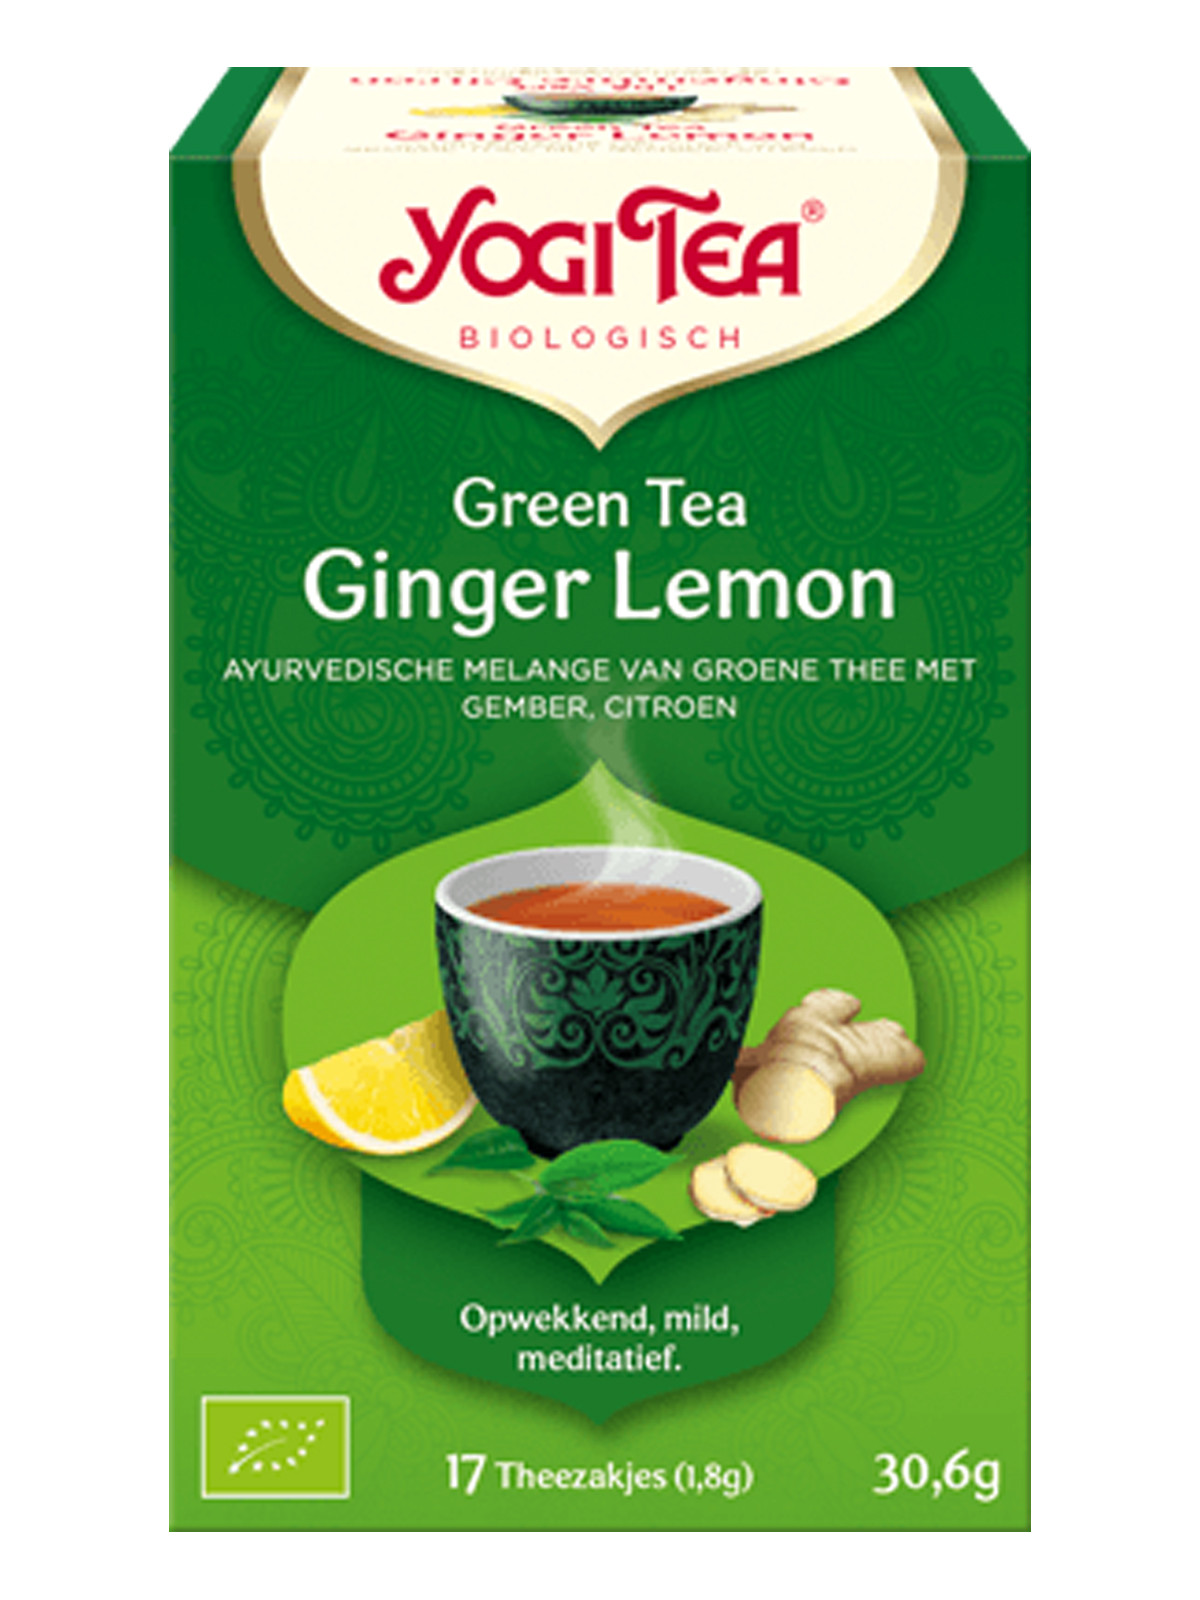 Green Tea Ginger Lemon